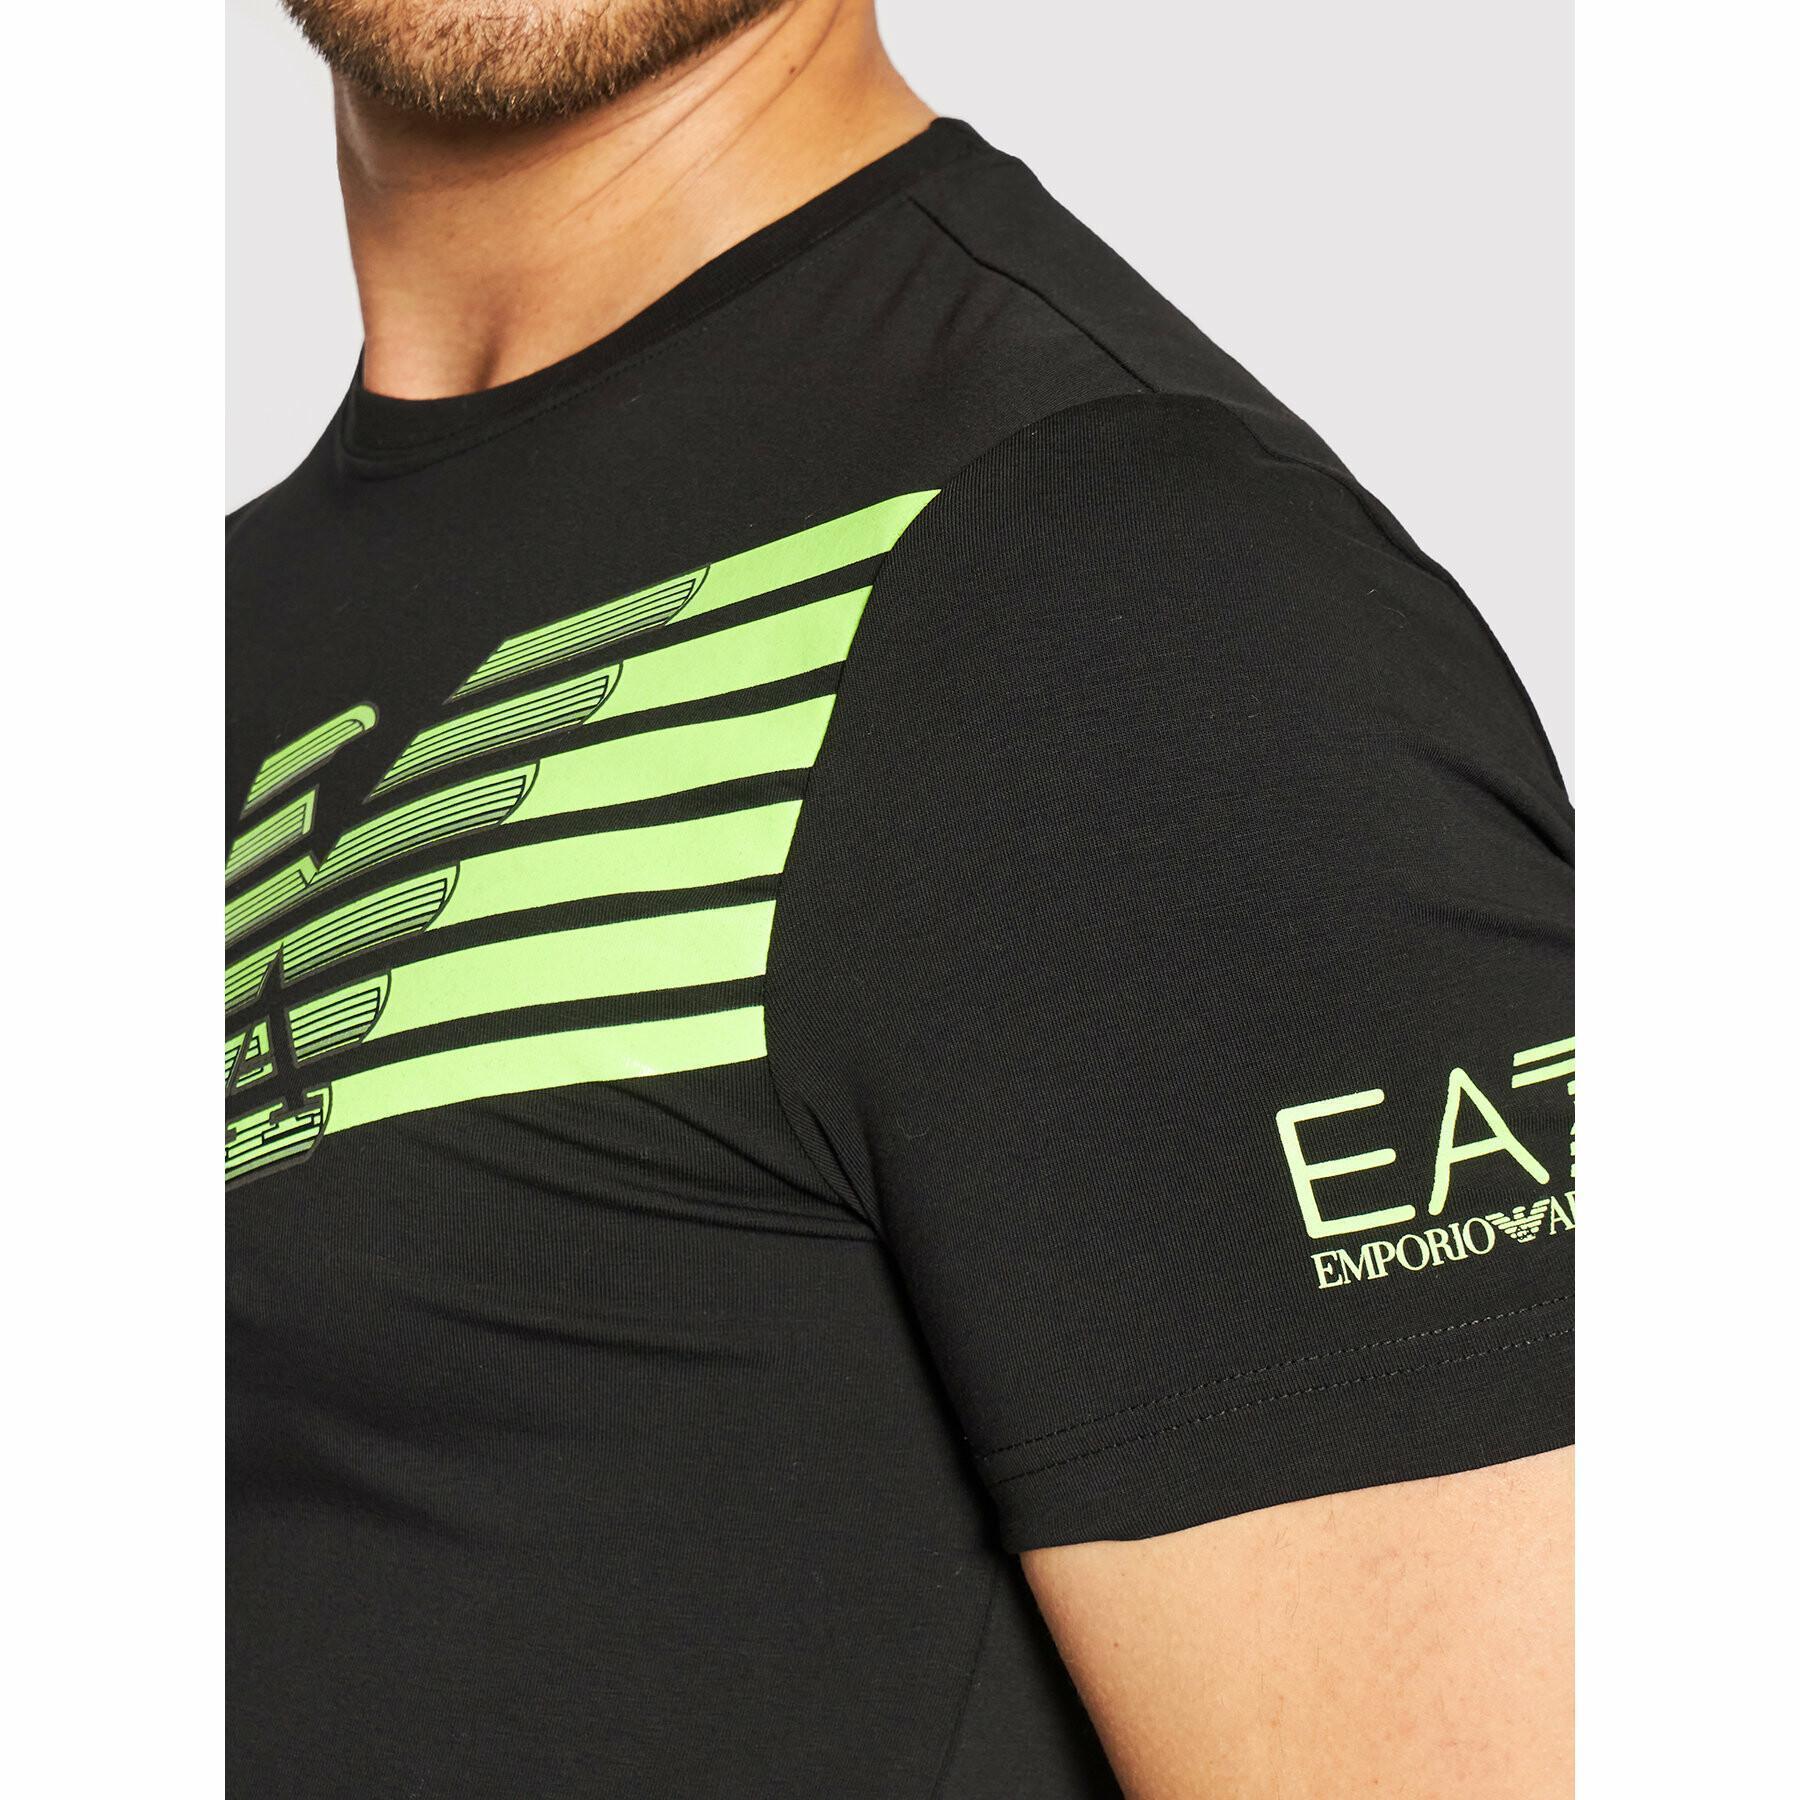 T-shirt EA7 Emporio Armani 6KPT32-PJ9TZ noir